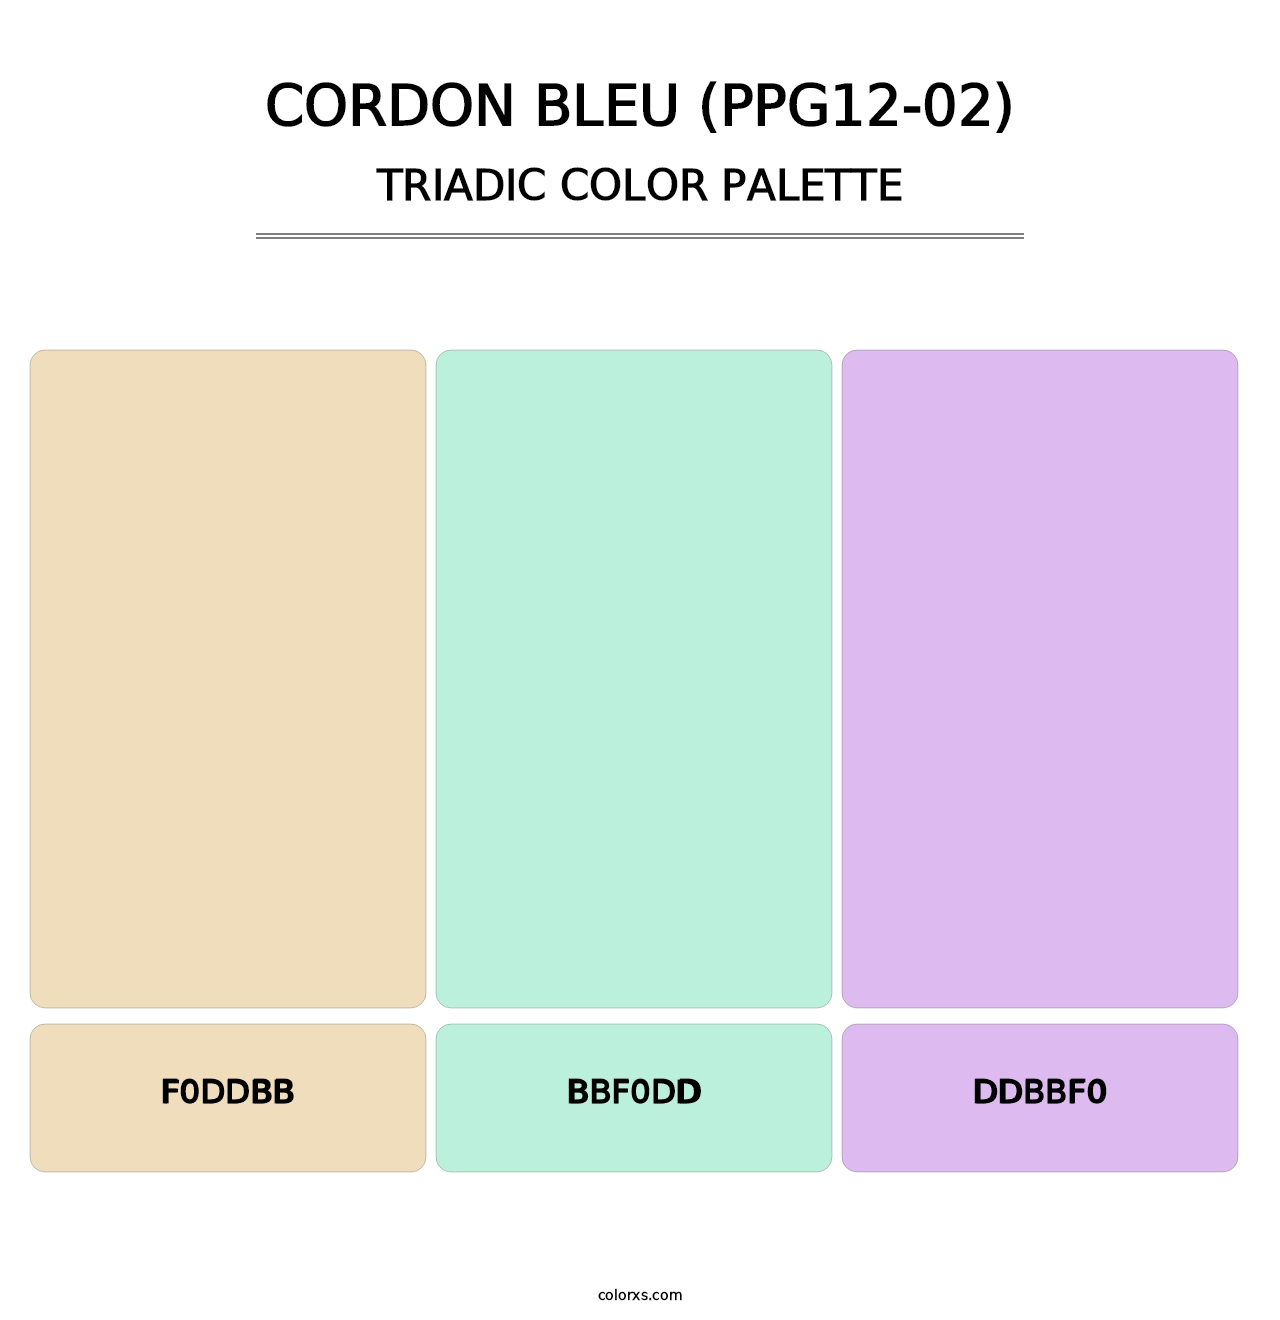 Cordon Bleu (PPG12-02) - Triadic Color Palette